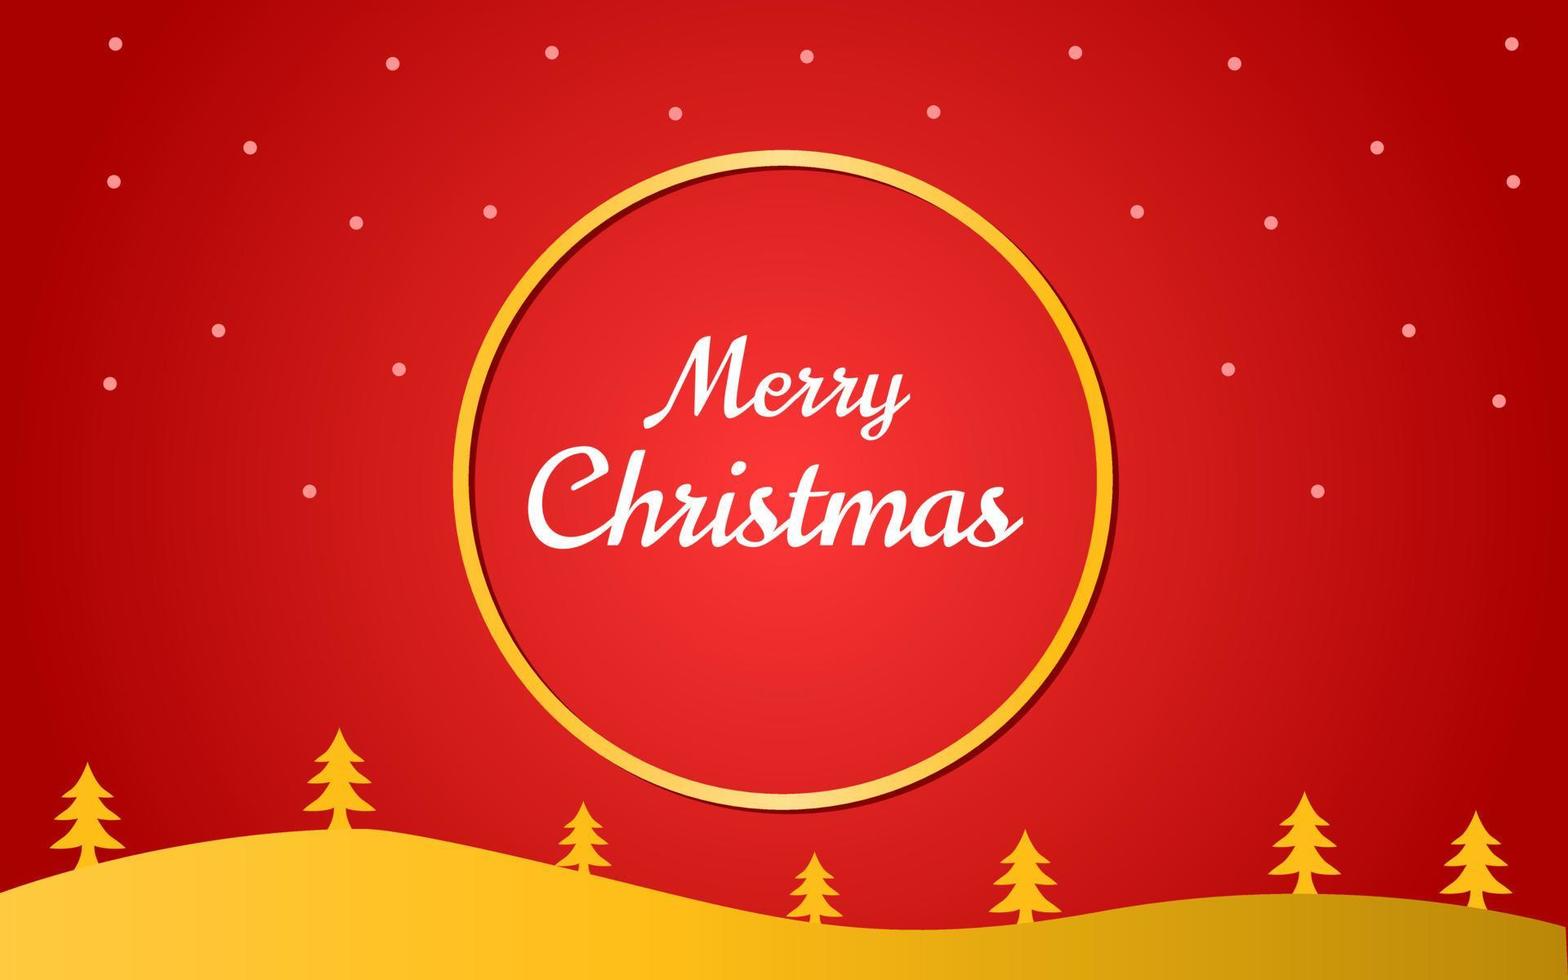 Diseño de fondo de saludo de Navidad de color rojo y dorado. diseños para tarjetas de felicitación y plantillas de banner. vector